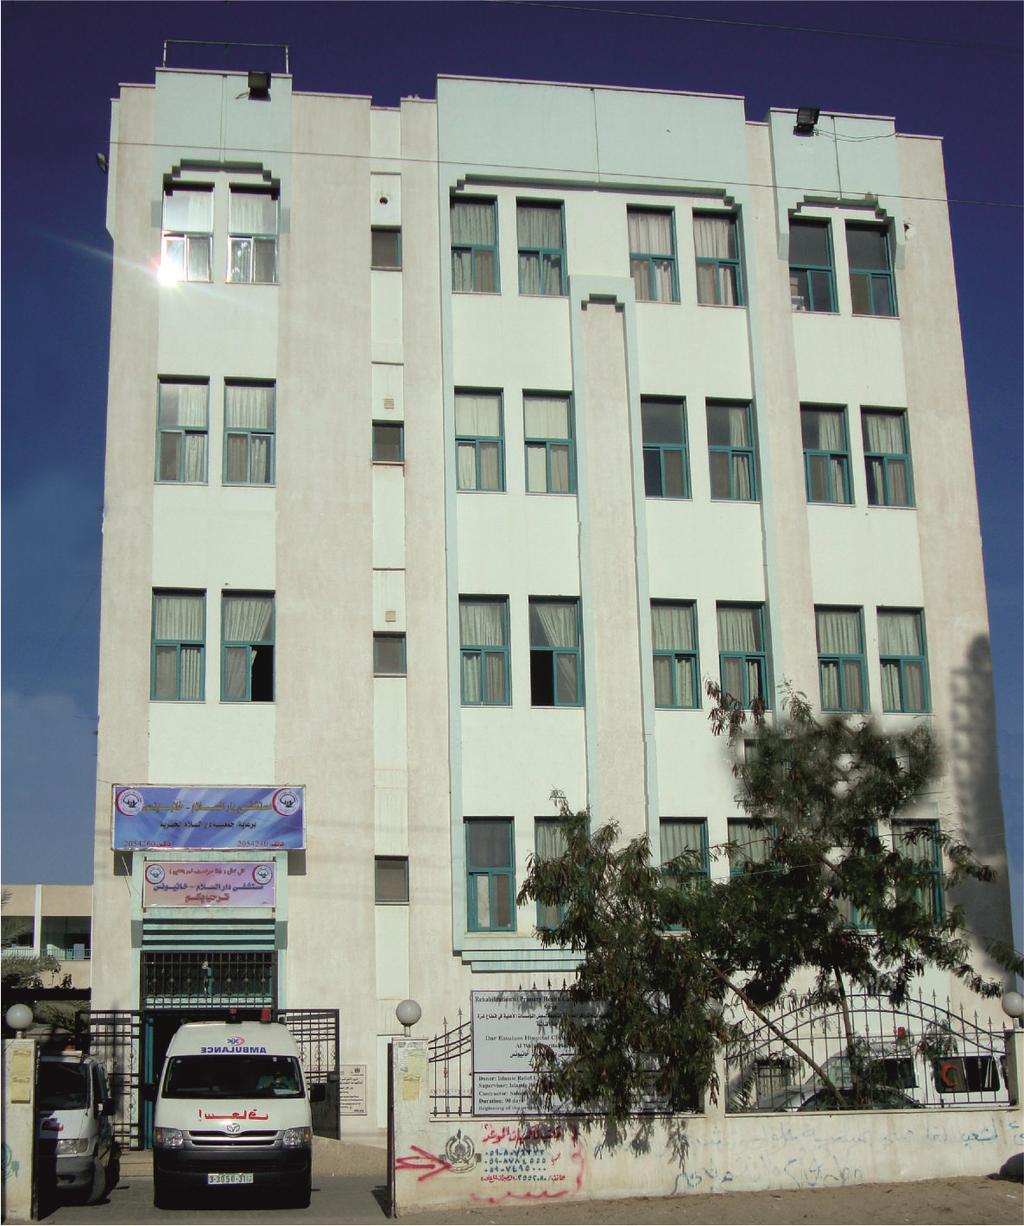 Dar Essalam Hospital